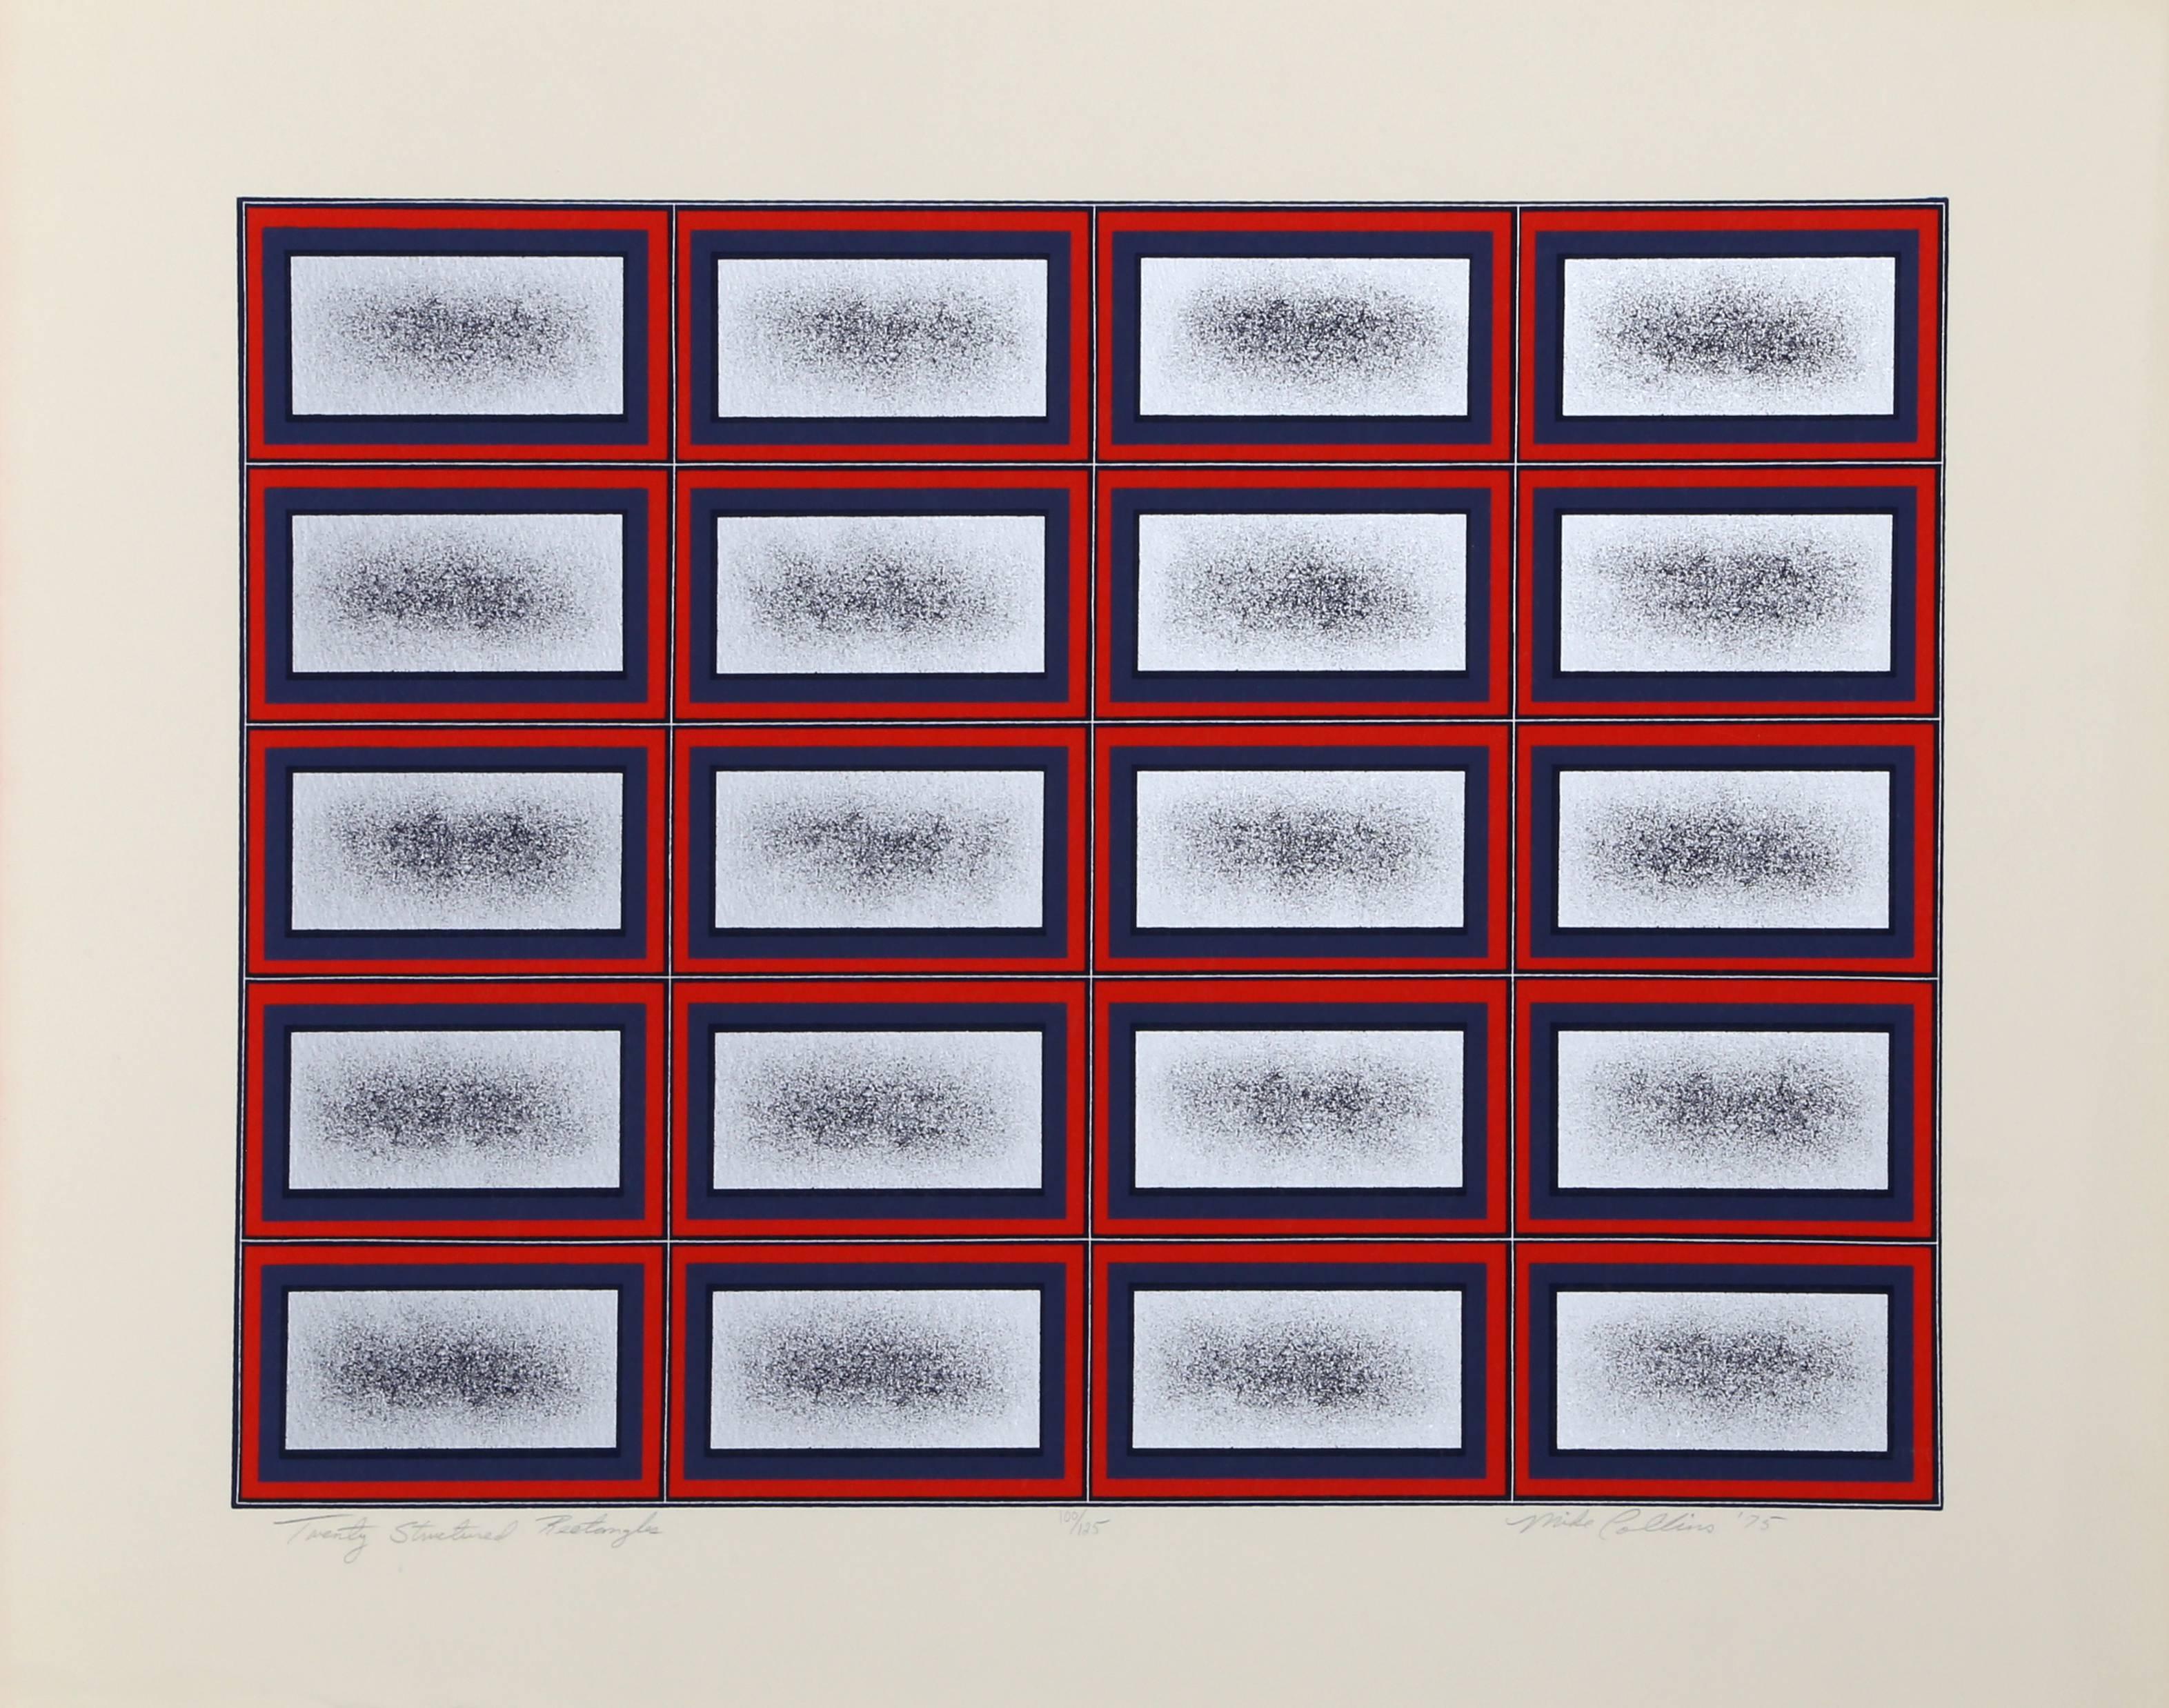 Artistics : Mike Collins
Titre : Vingt rectangles structurés
Année : 1975
Médium : Sérigraphie, signée et numérotée au crayon.
Edition : 150
Taille de l'image : 15 x 20 pouces 
Taille : 20 x 26 pouces
